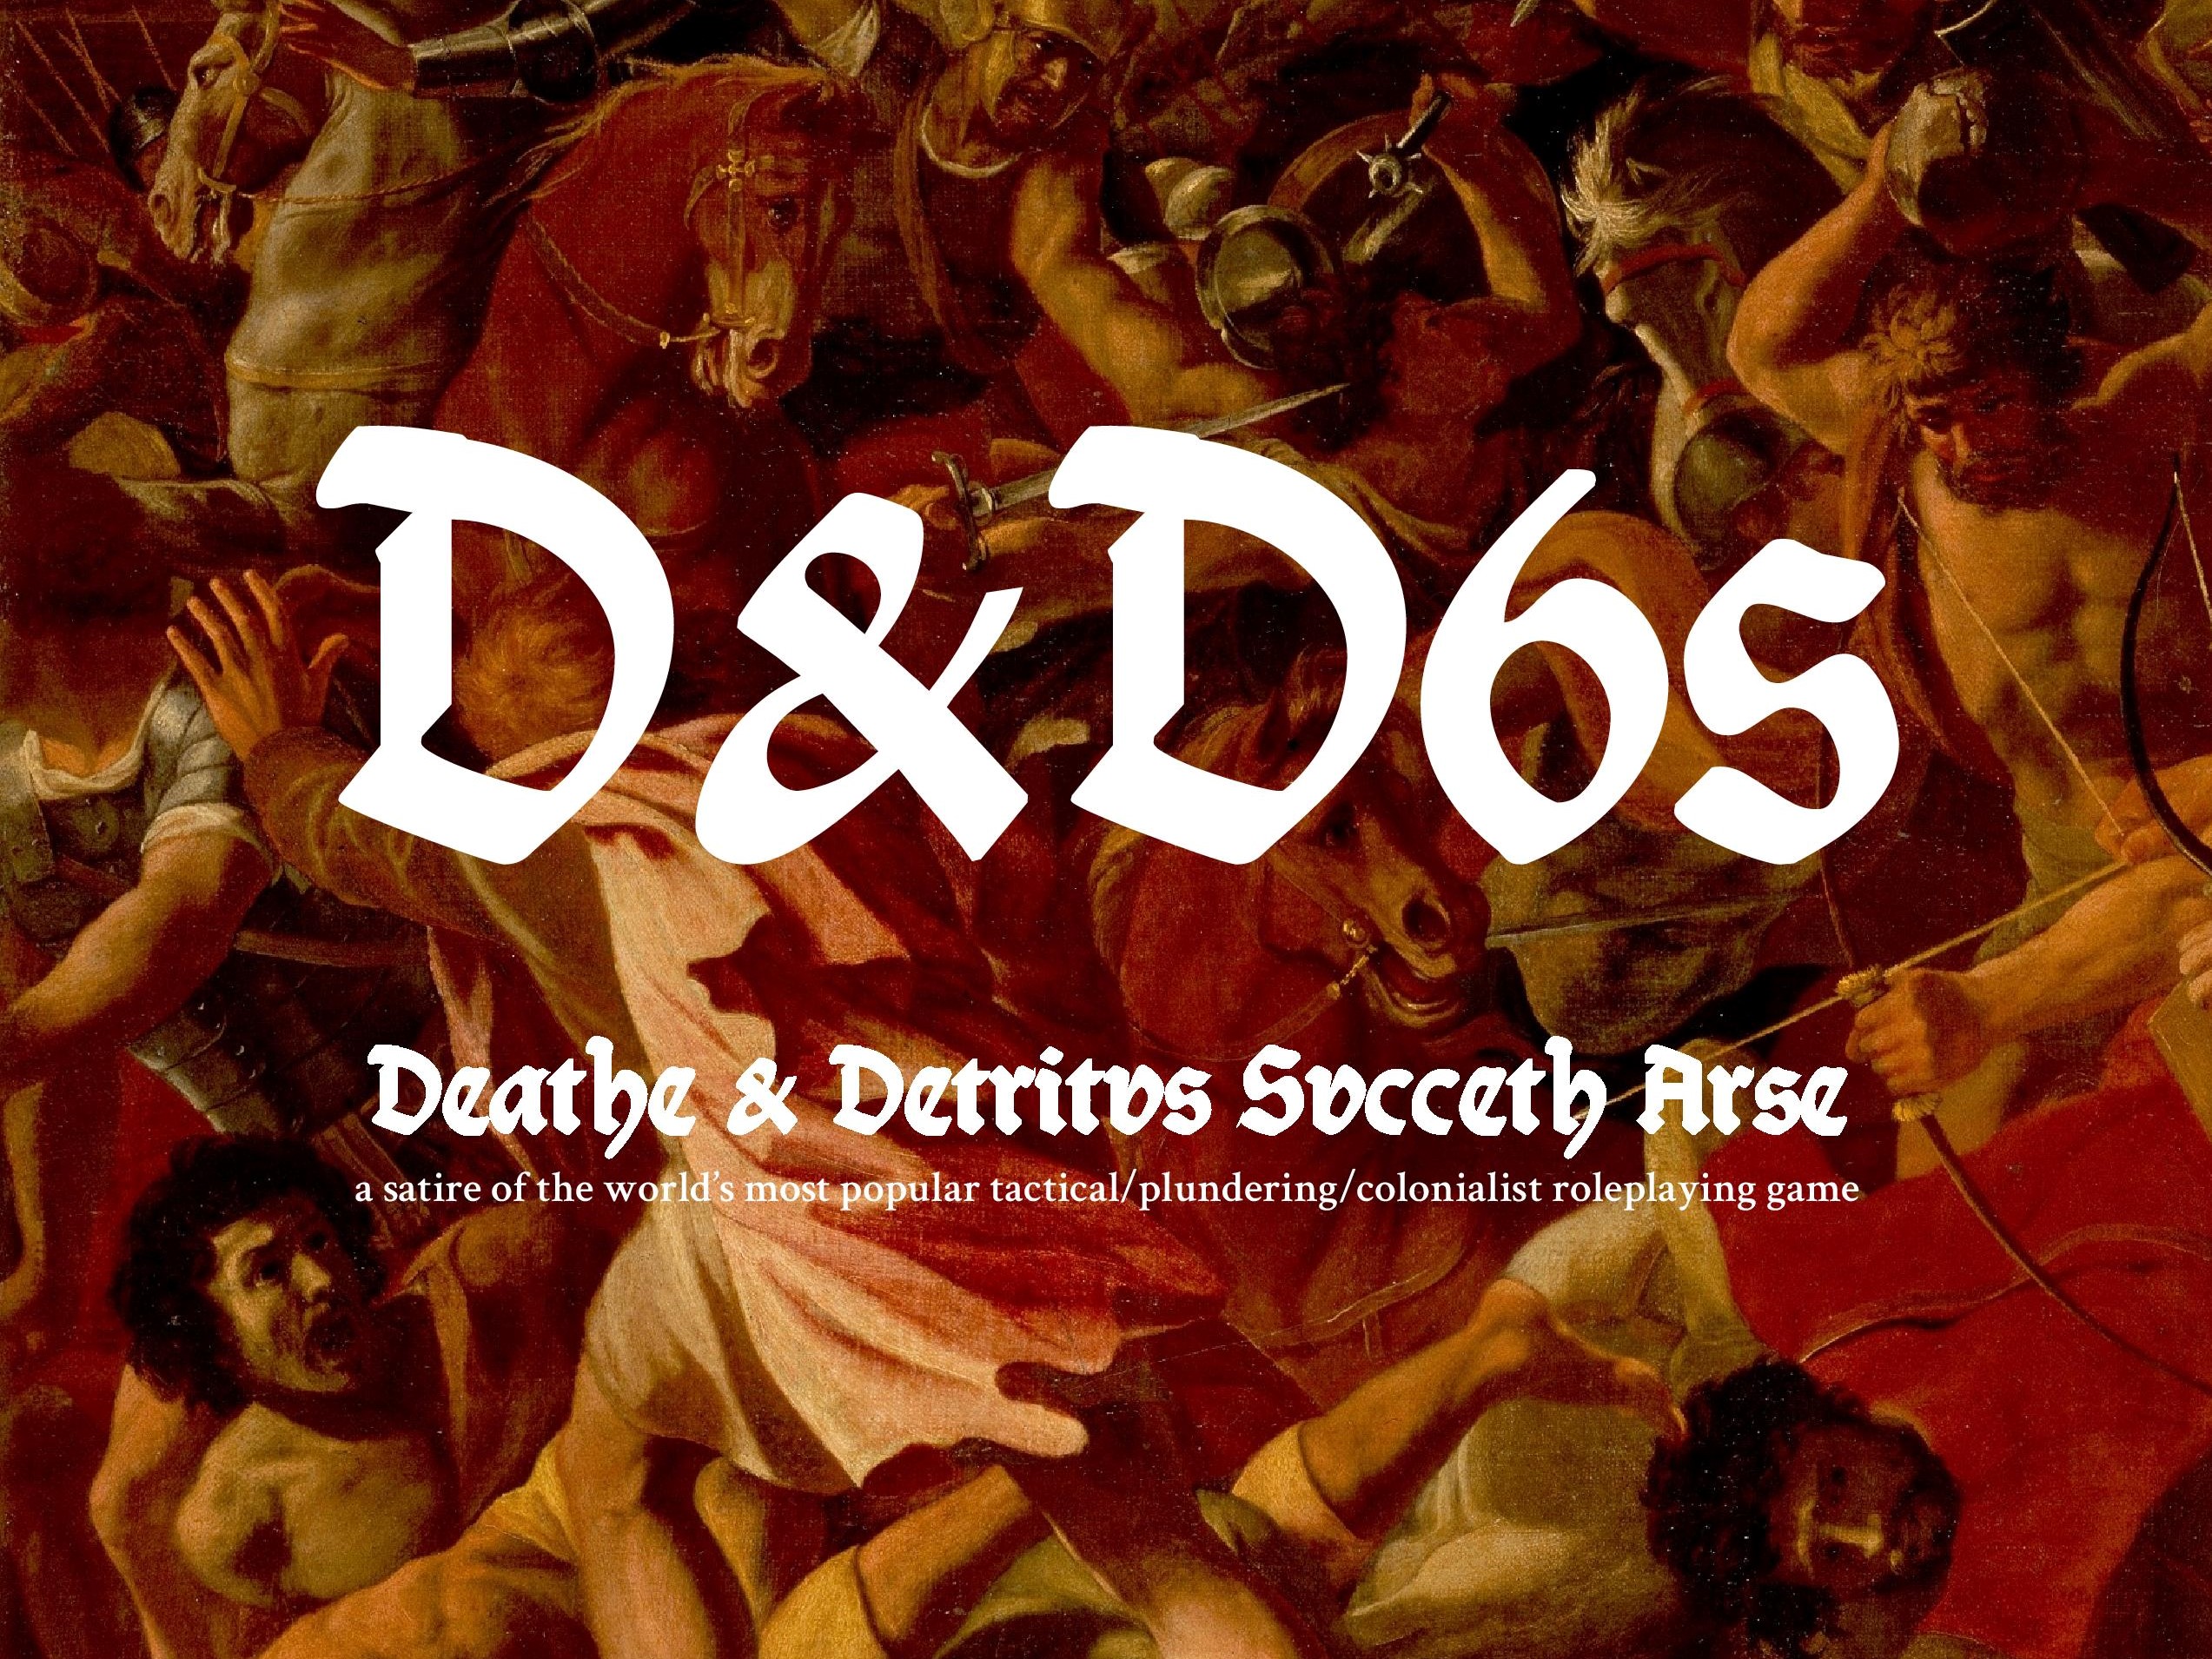 Death & Detritus